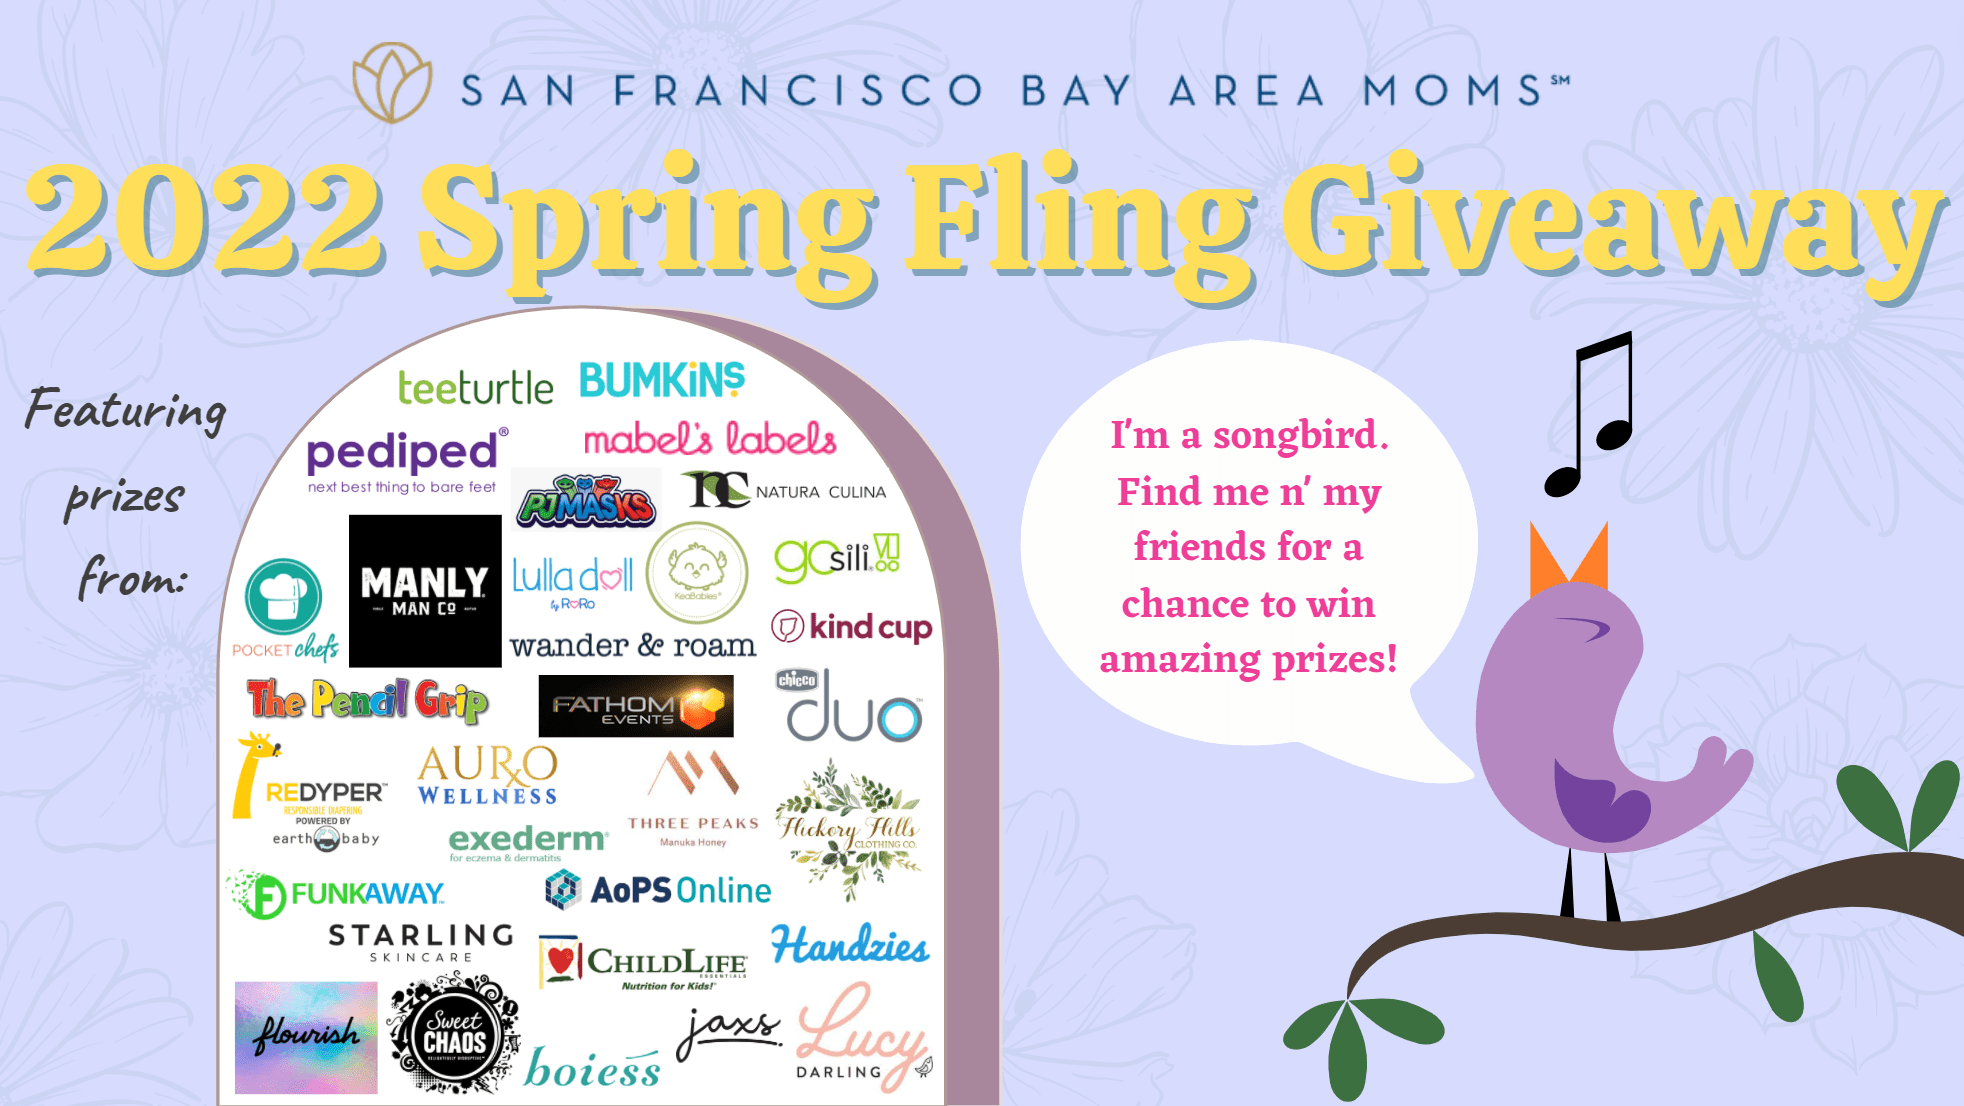 2022 Spring Fling Giveaway - San Francisco Bay Area Moms